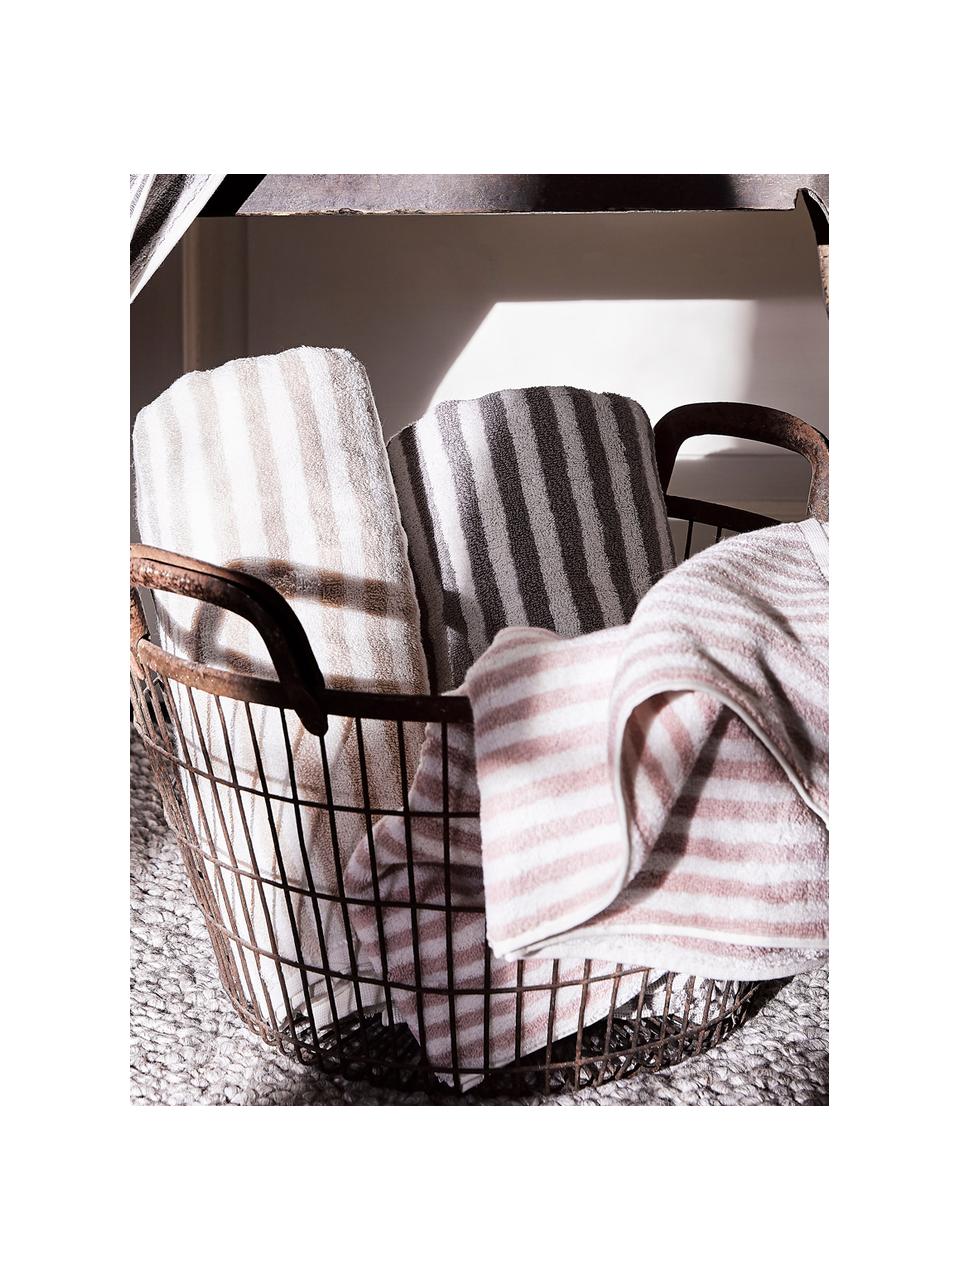 Set de toallas a rayas Viola, 3 uds., Color arena, blanco crema, Set de diferentes tamaños